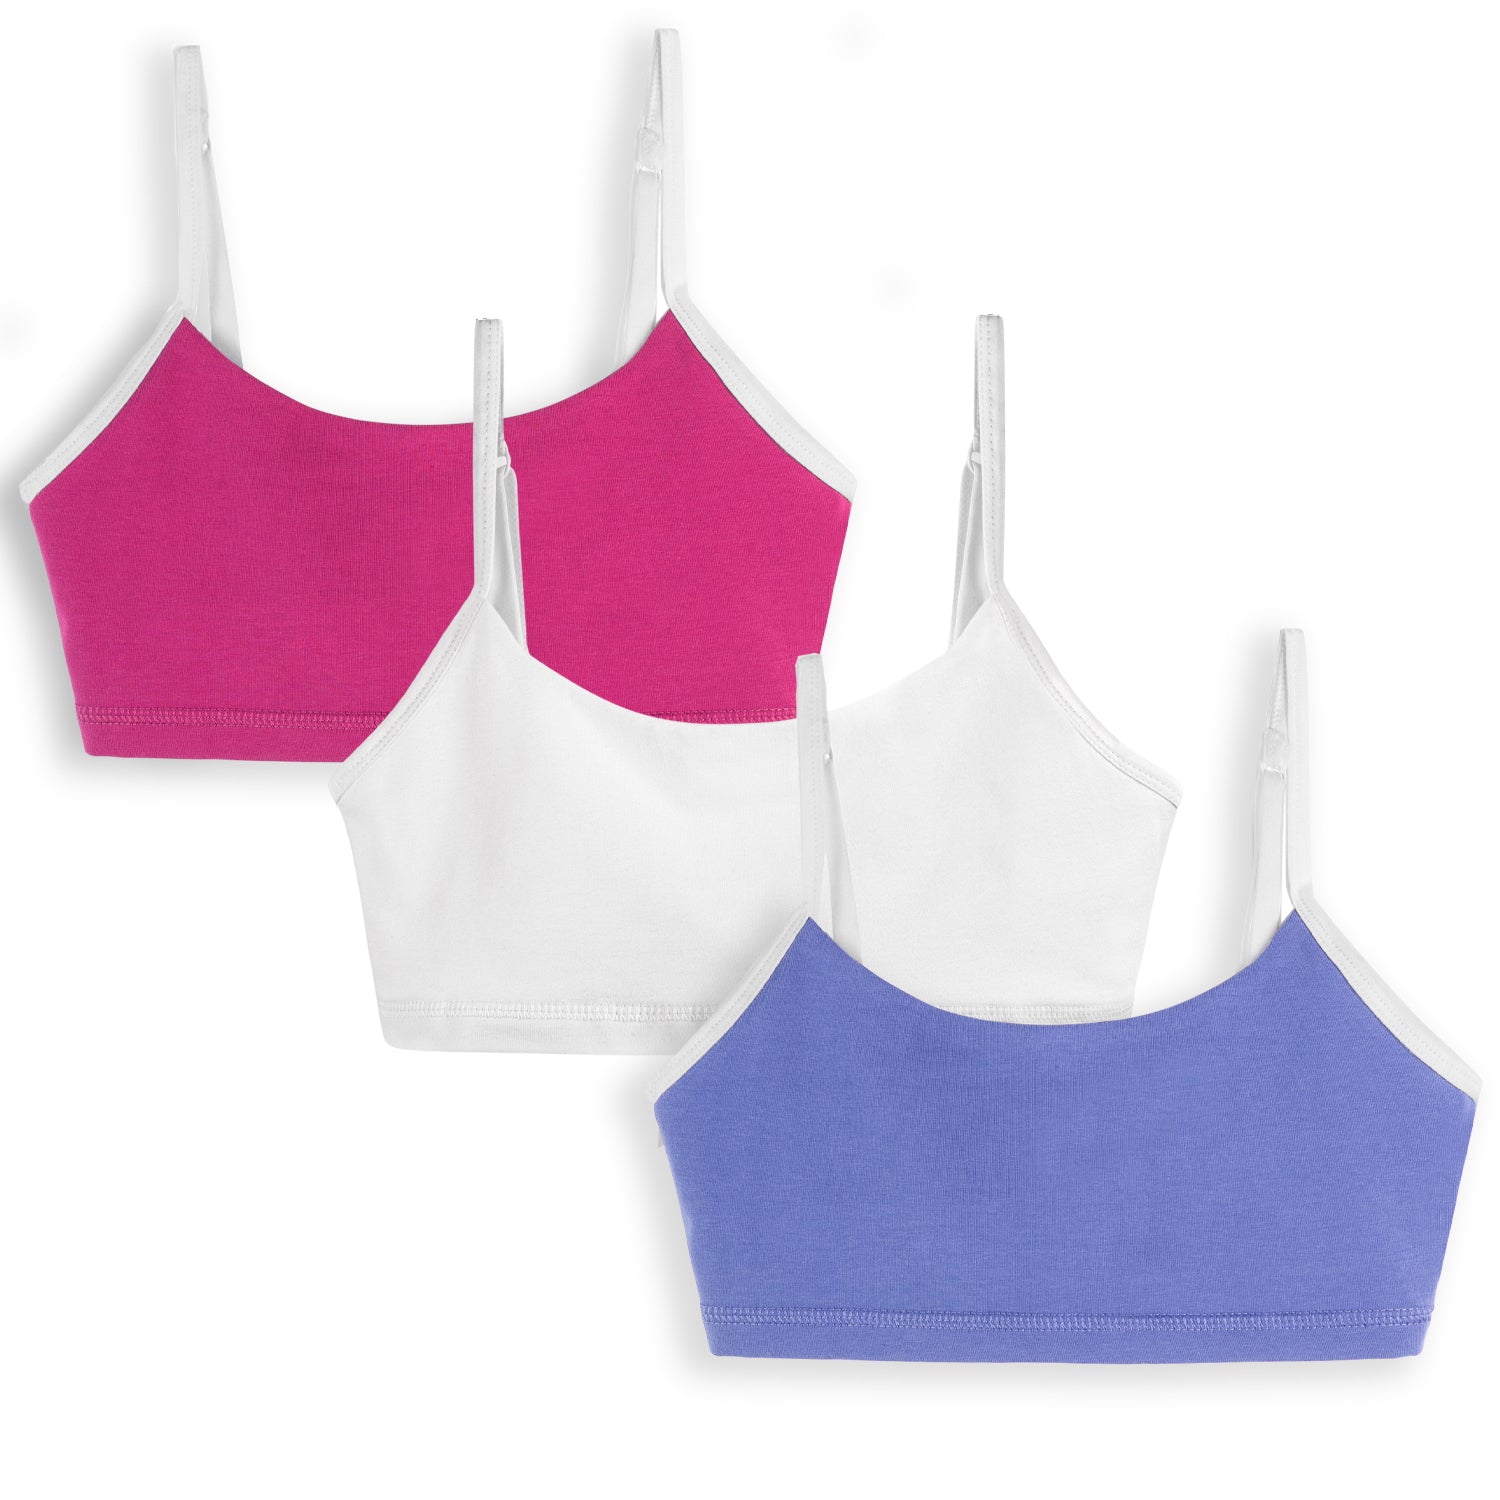 Girls Teenage Bra Comfort Underwear Kids Cotton Soft Breathable Crop Tops